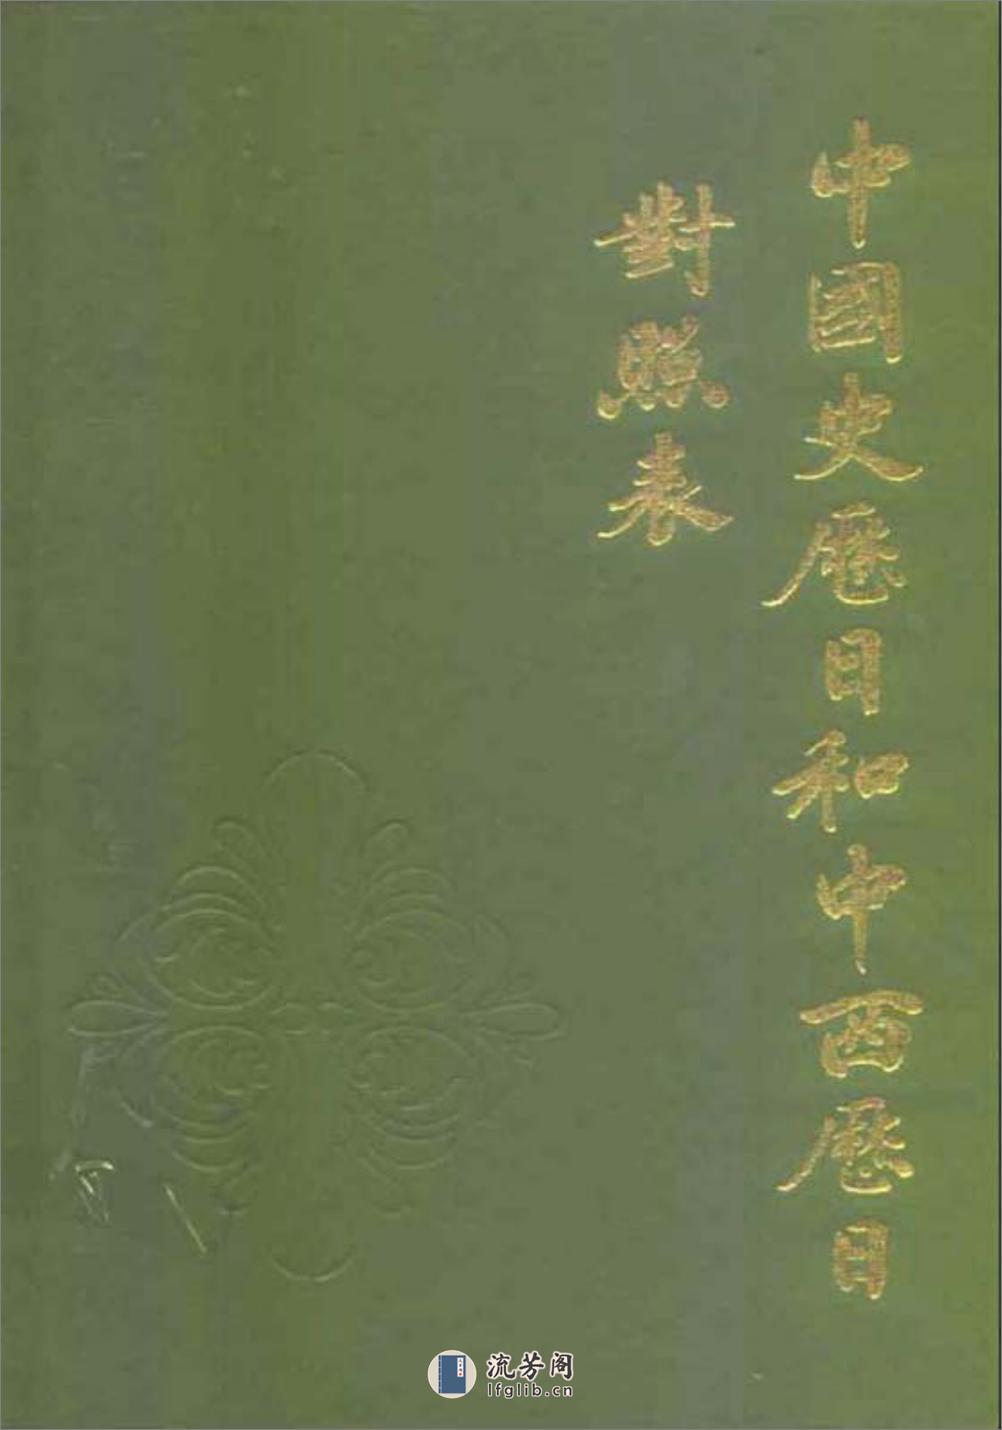 中国史历日和中西历日对照表·方诗铭·上海辞书1 - 第1页预览图